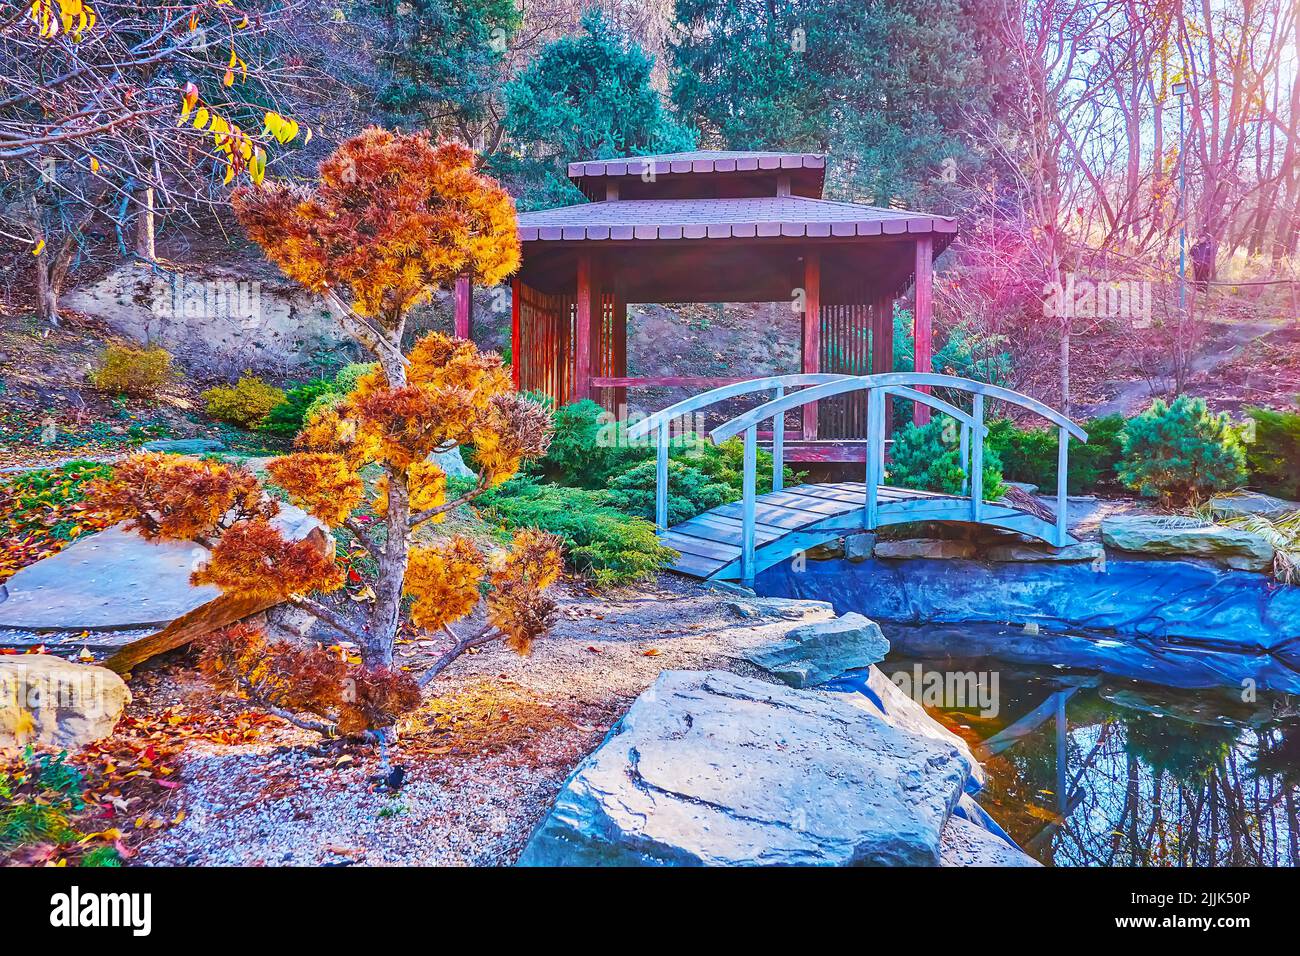 Le pittoresque mélèze topiaire jaune devant un petit étang et pavillon en bois dans le jardin de thé japonais Rodzi, jardin botanique de Kiev, Ukraine Banque D'Images